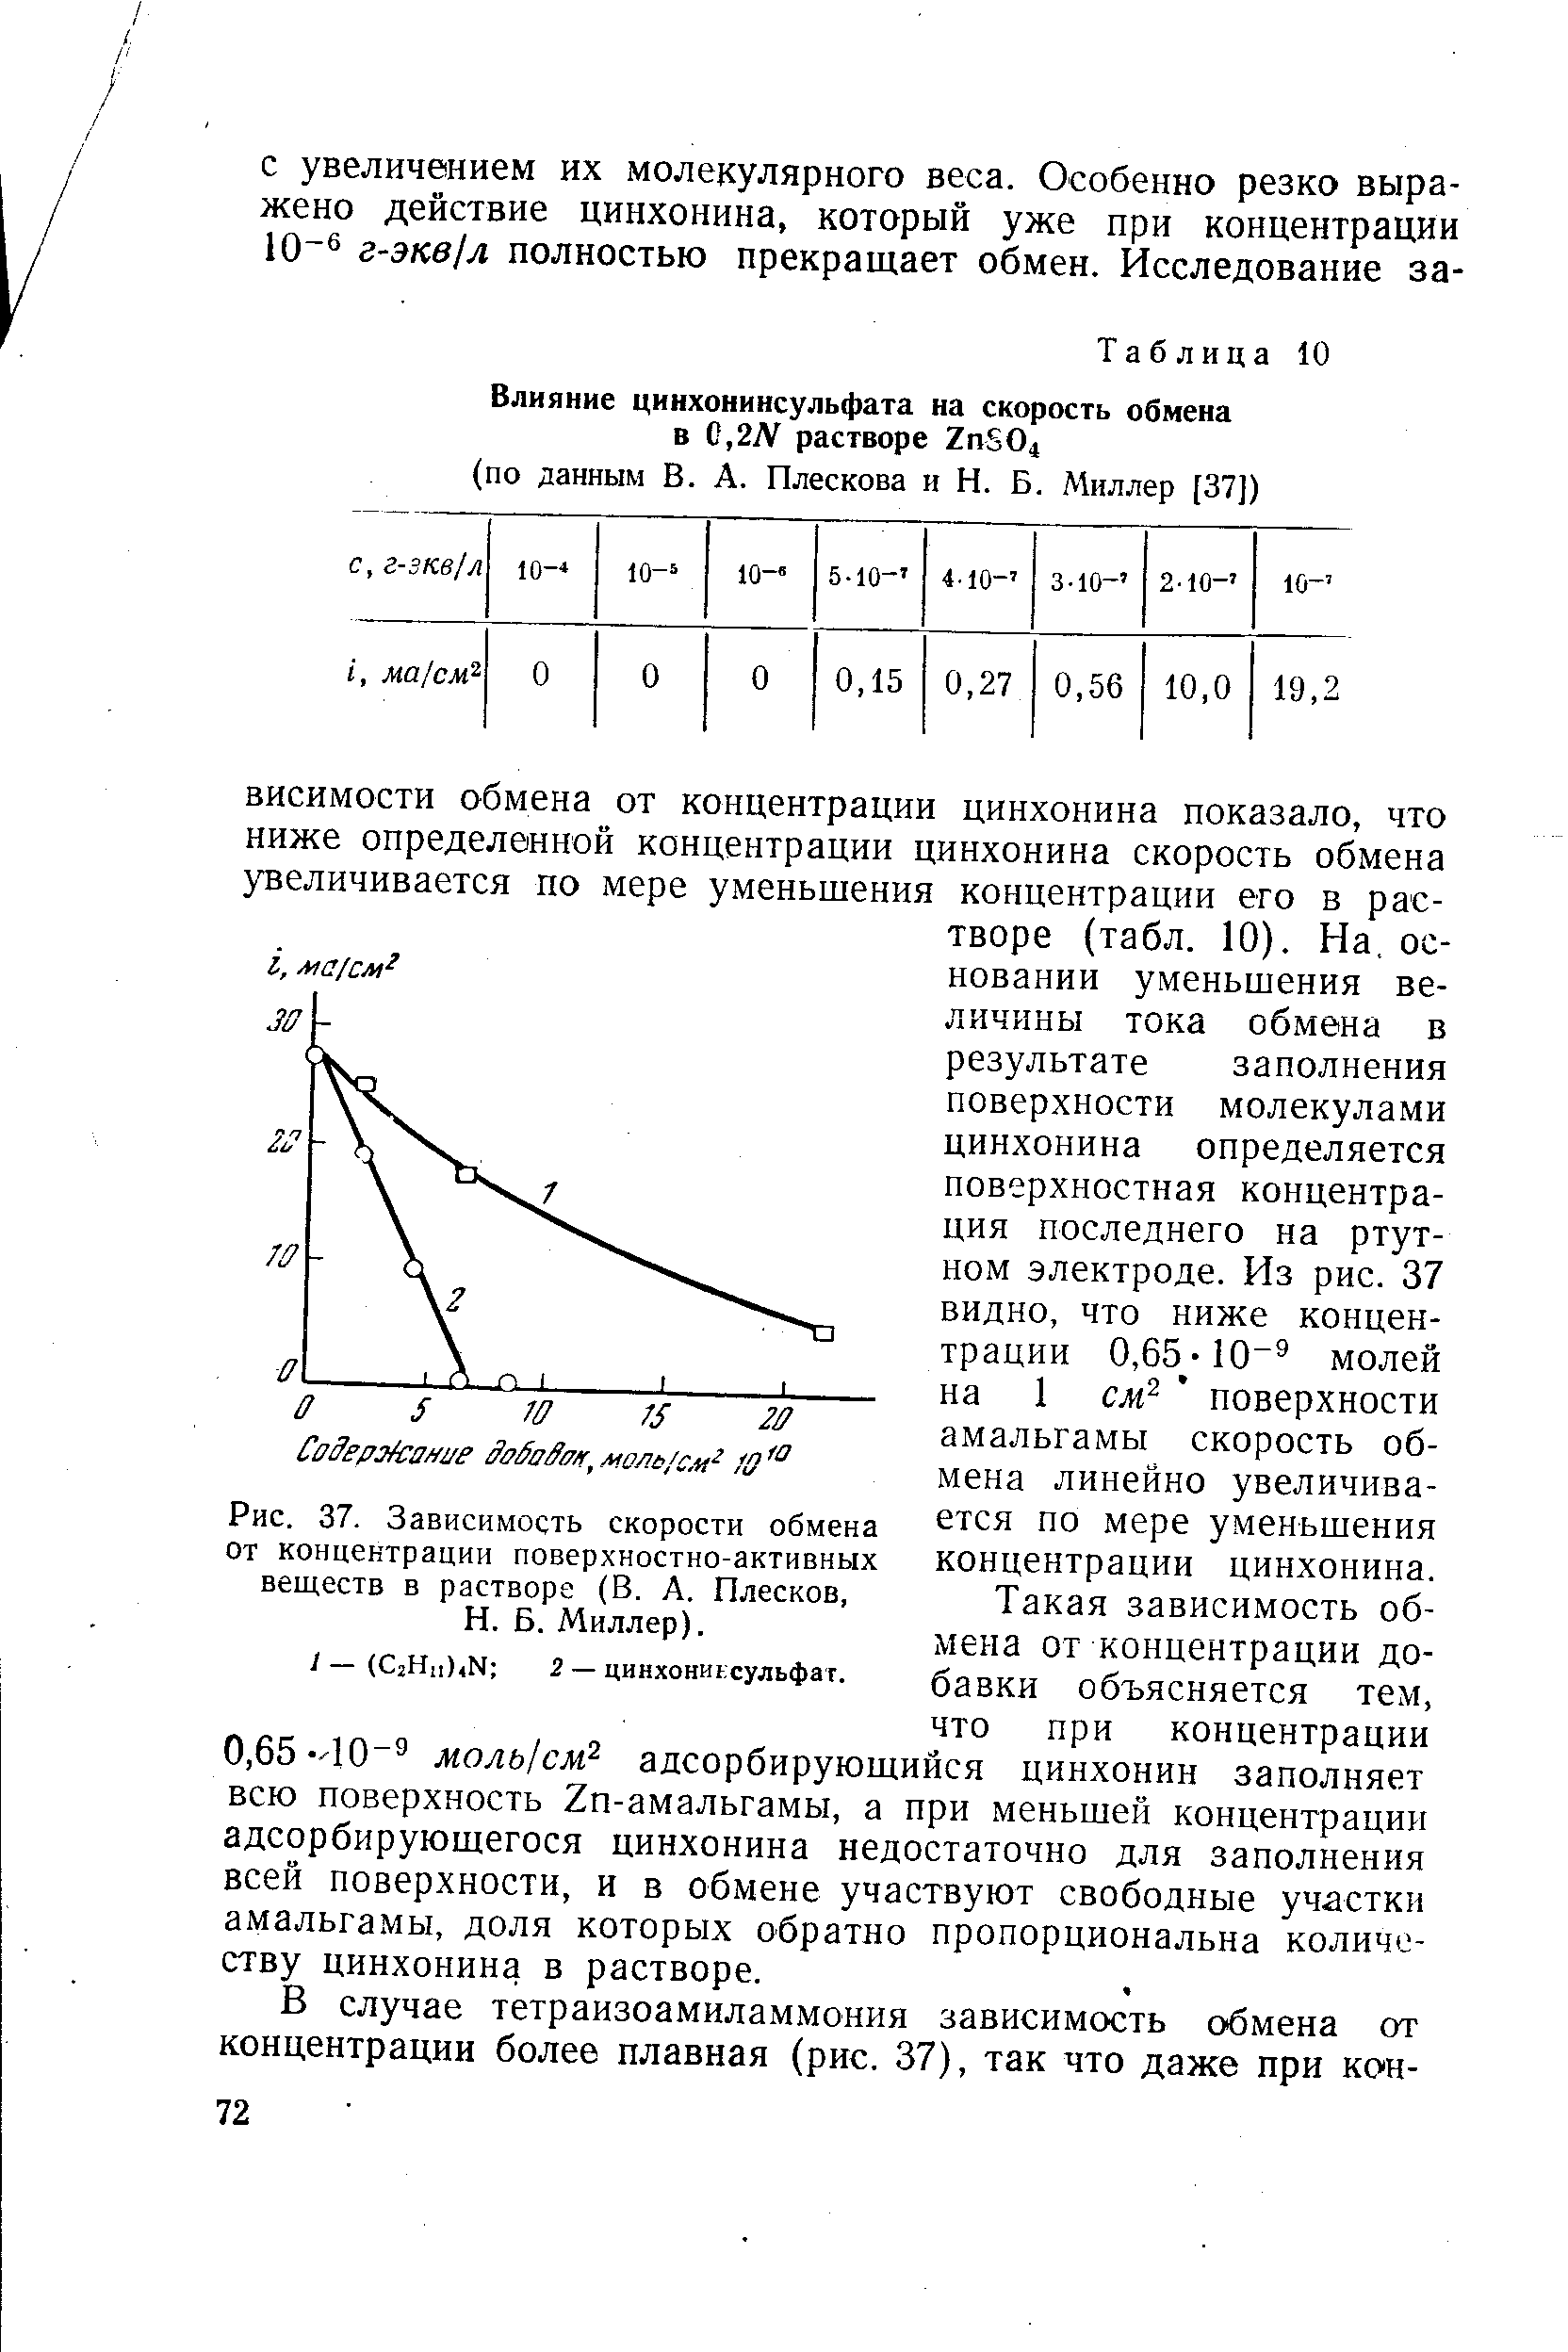 Рис. 37. Зависимость скорости обмена от концентрации <a href="/info/20689">поверхностно-активных веществ</a> в растворе (В. А. Плесков, Н. Б. Миллер).
